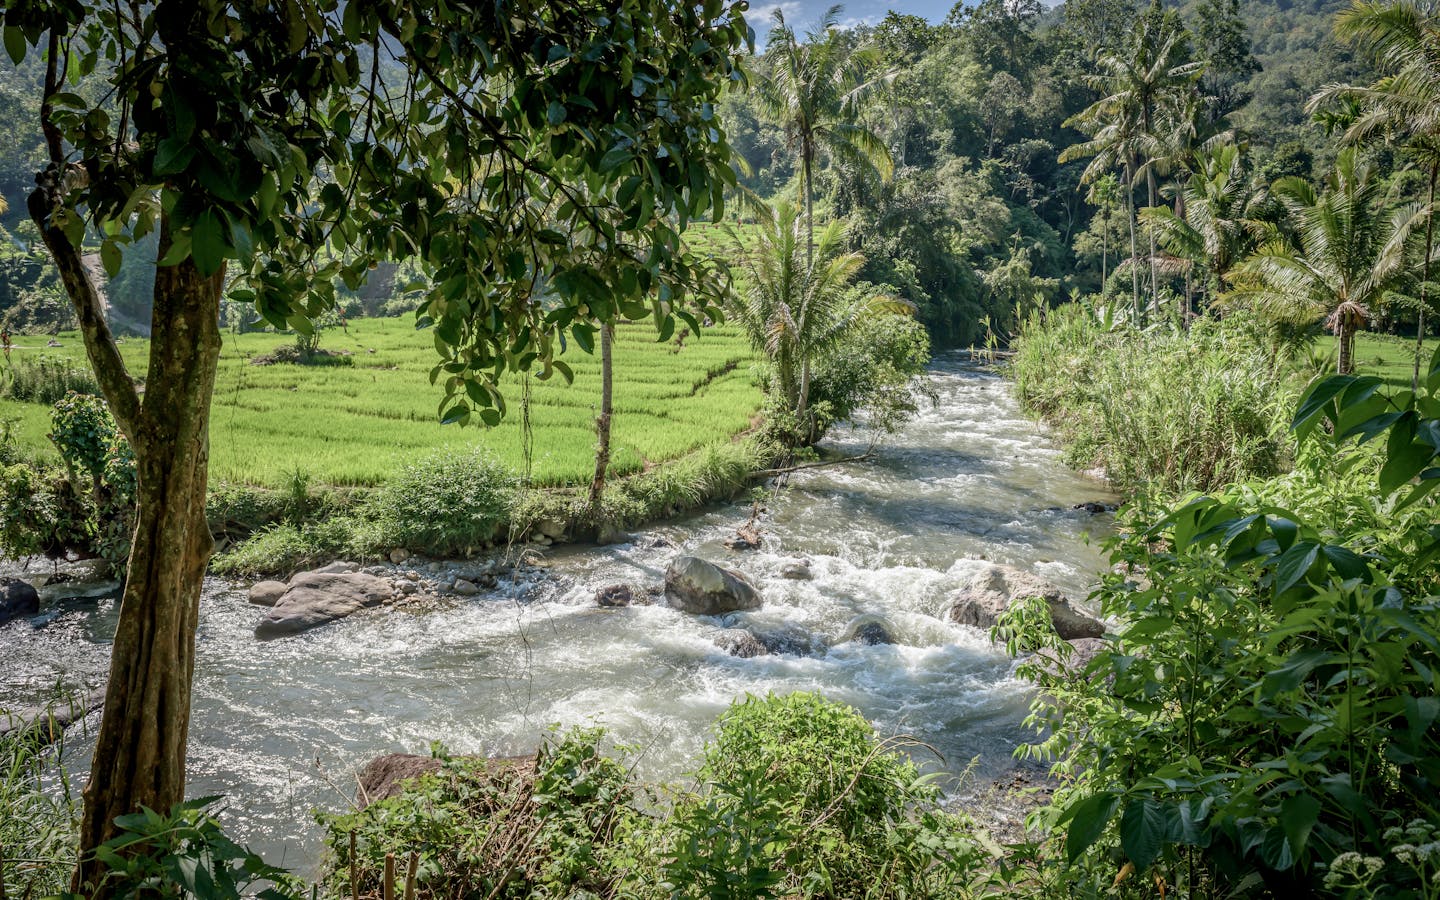 A river flows through the Batang Gadis watershed in Mandailing Natal, North Sumatra.